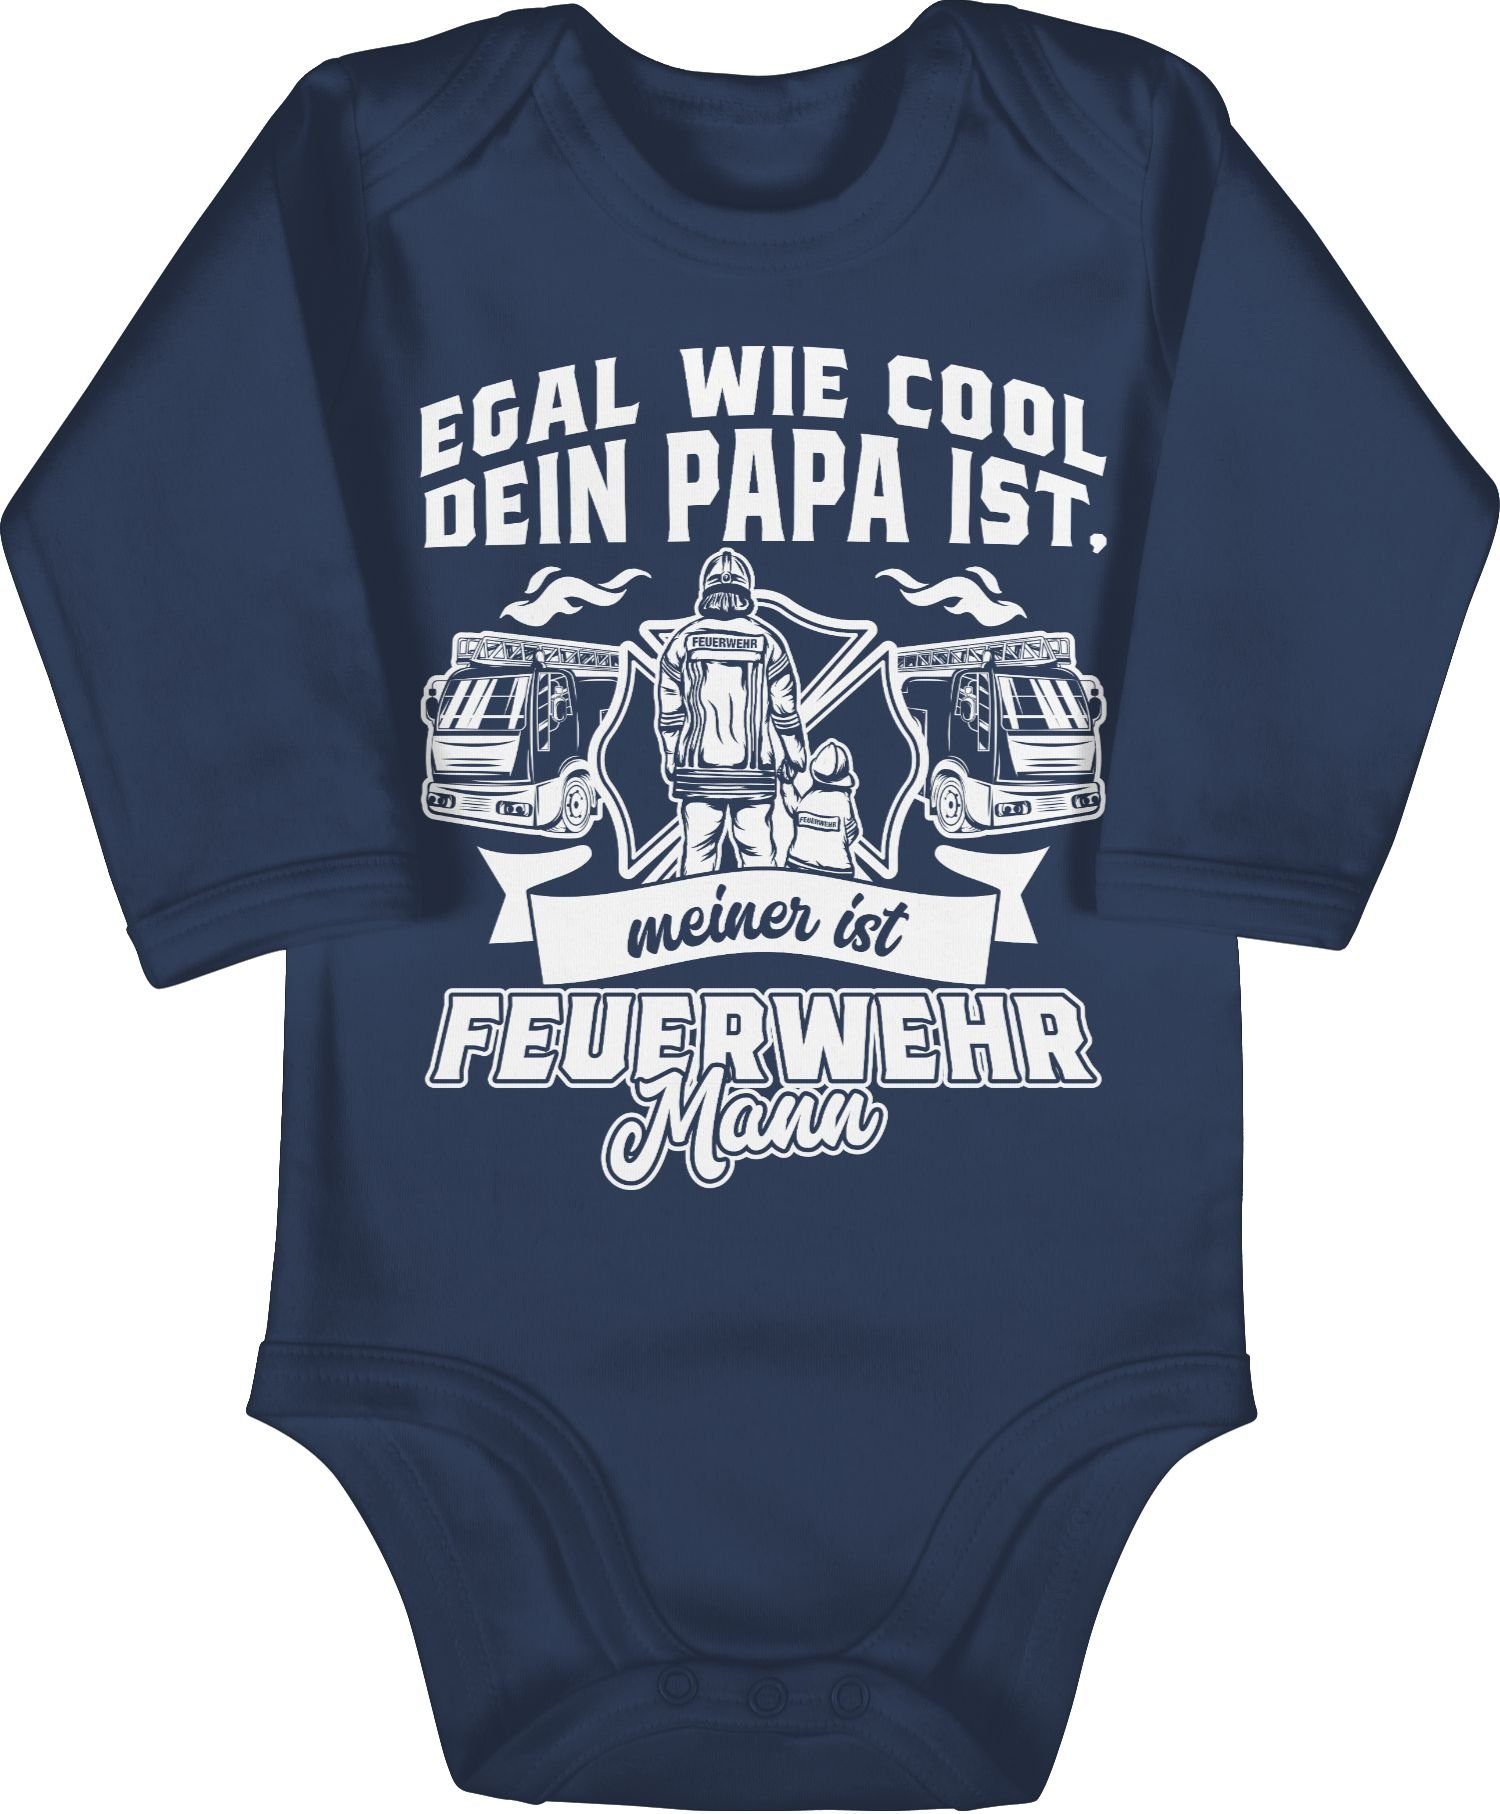 Shirtracer Shirtbody Egal wie cool dein Papa ist meiner ist Feuerwehr Mann Feuerwehr 2 Navy Blau